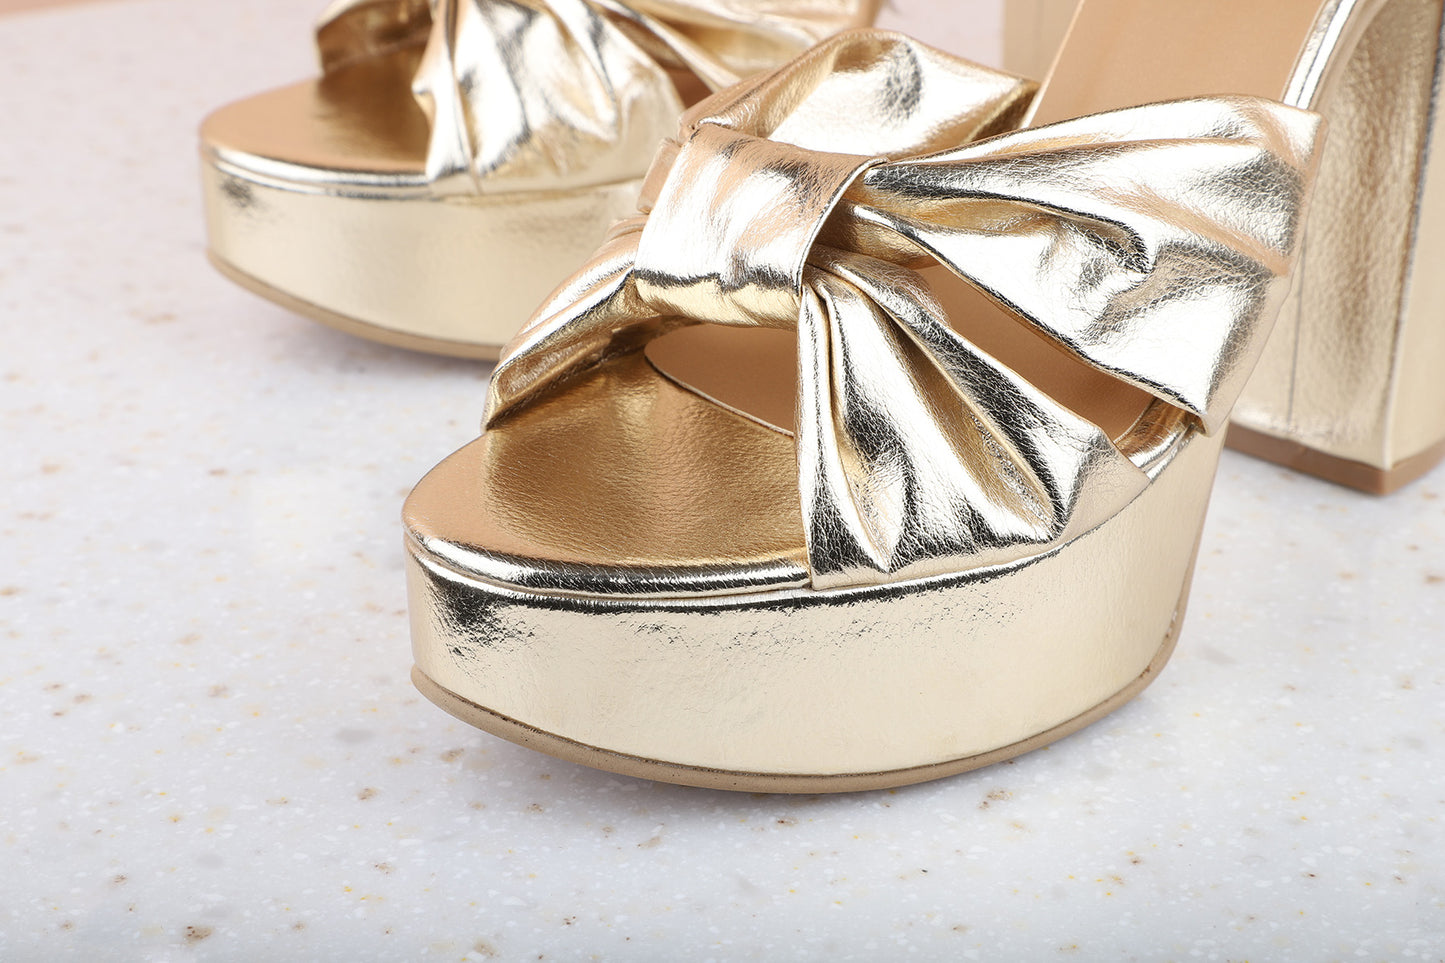 Women Gold Embellished Platform Heels